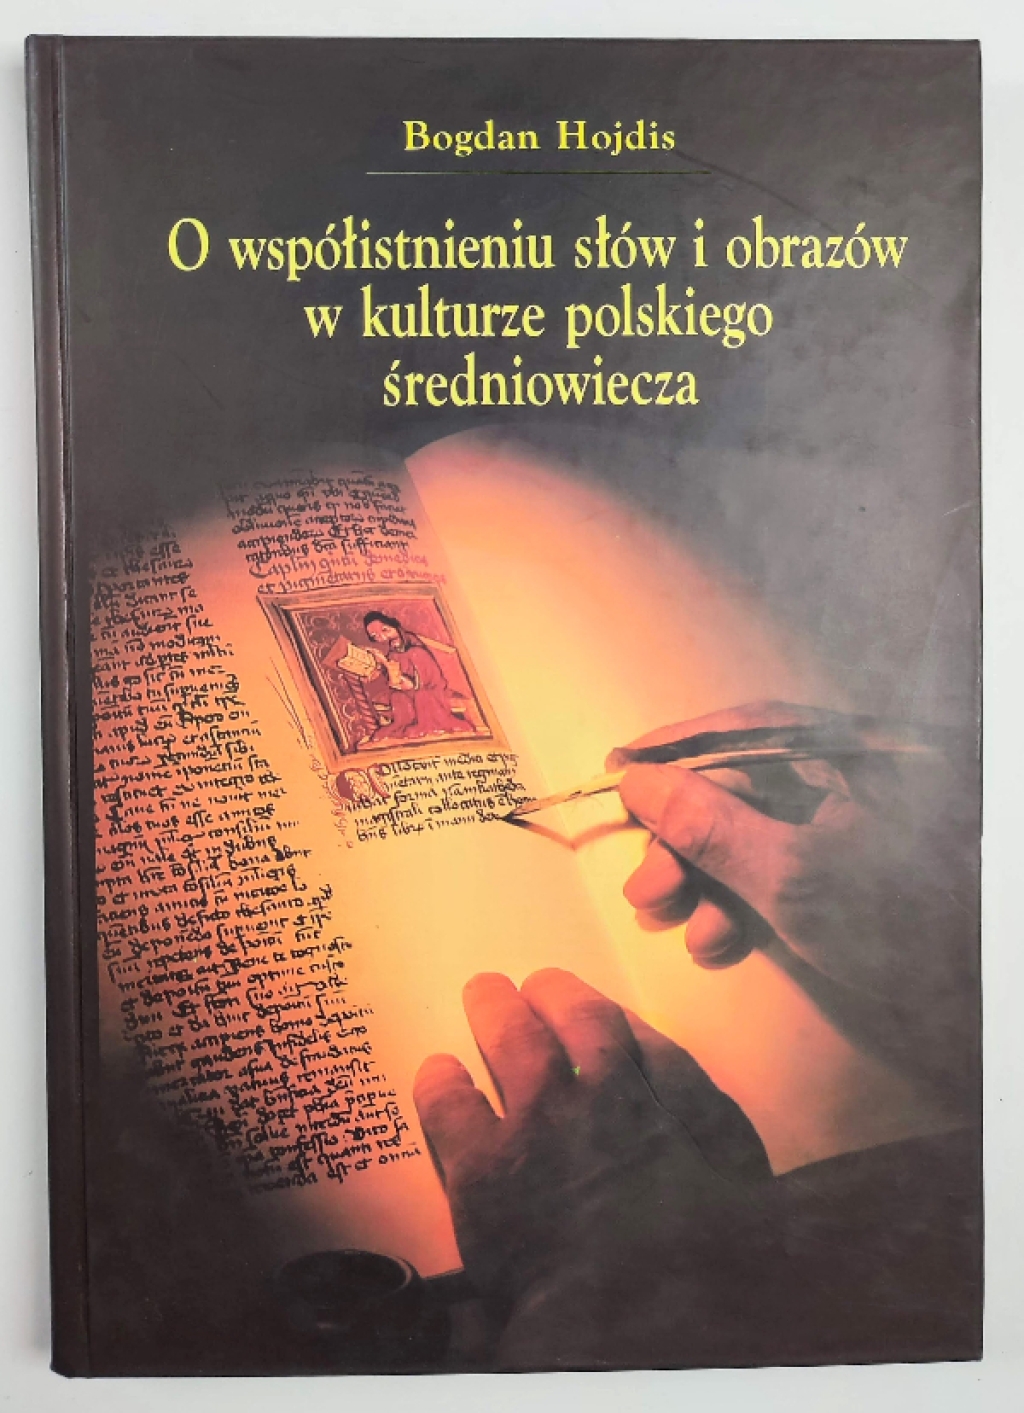 O współistnieniu słów i obrazów w kulturze polskiego średniowiecza